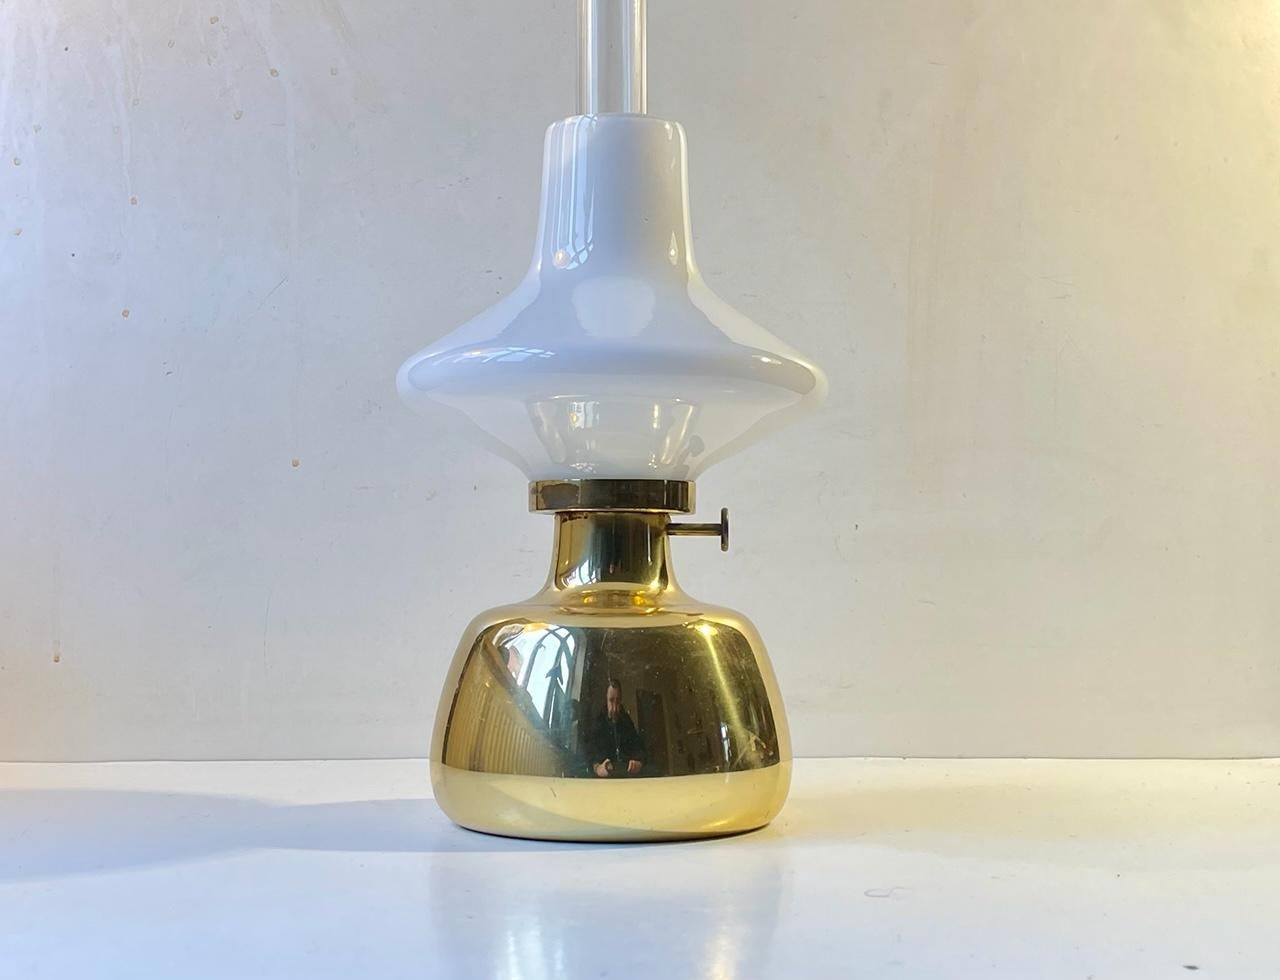 Conçue par Henning Koppel (1918-81) dans les années 60 et fabriquée par Louis Poulsen dans les années 70, la lampe à huile Petronella est fabriquée en laiton massif et possède un abat-jour en verre opalin avec une cheminée interne en verre clair.